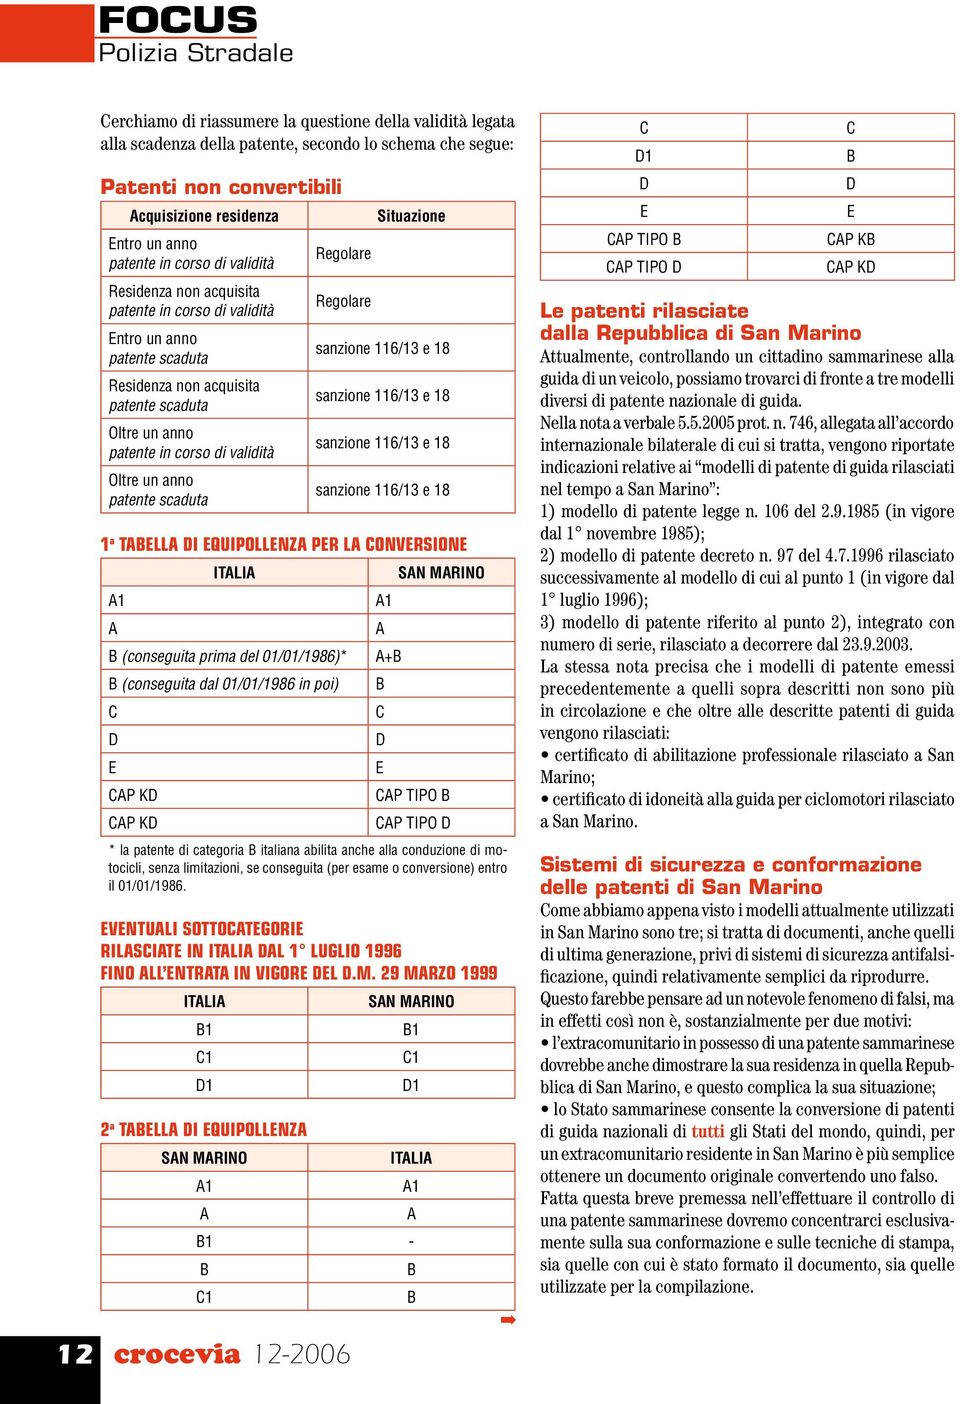 P K P K + SN MRINO P TIPO P TIPO * la patente di categoria italiana abilita anche alla conduzione di motocicli, senza limitazioni, se conseguita (per esame o conversione) entro il 01/01/1986.